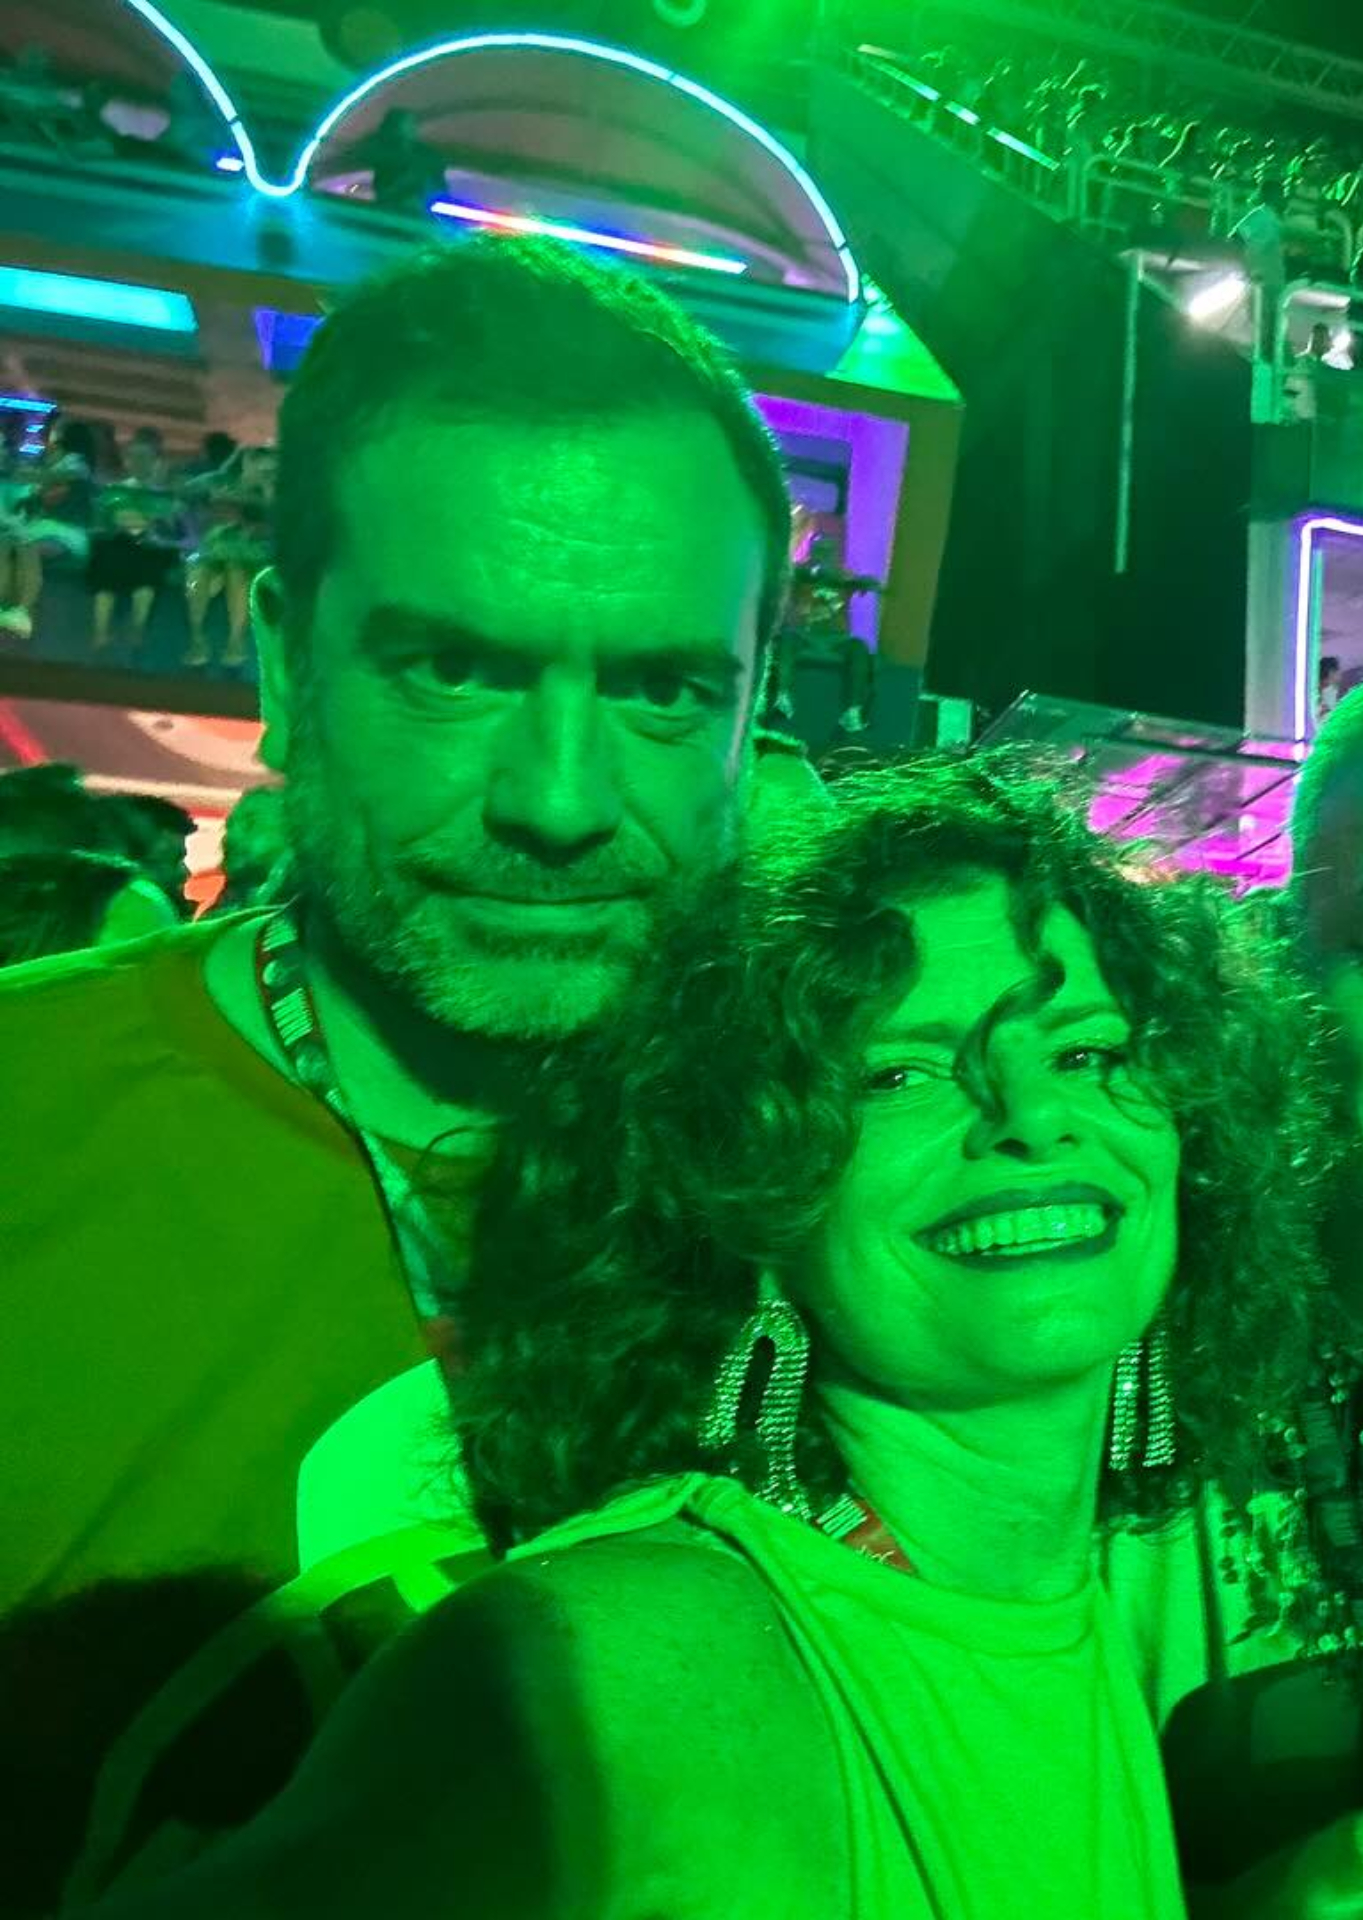 Desde de 2019, Debora Bloch é casada com o produtor português João Nuno Martins. A atriz costuma compartilhar fotos das viagens e momentos com o amado nas redes sociais. Reprodução/Instagram